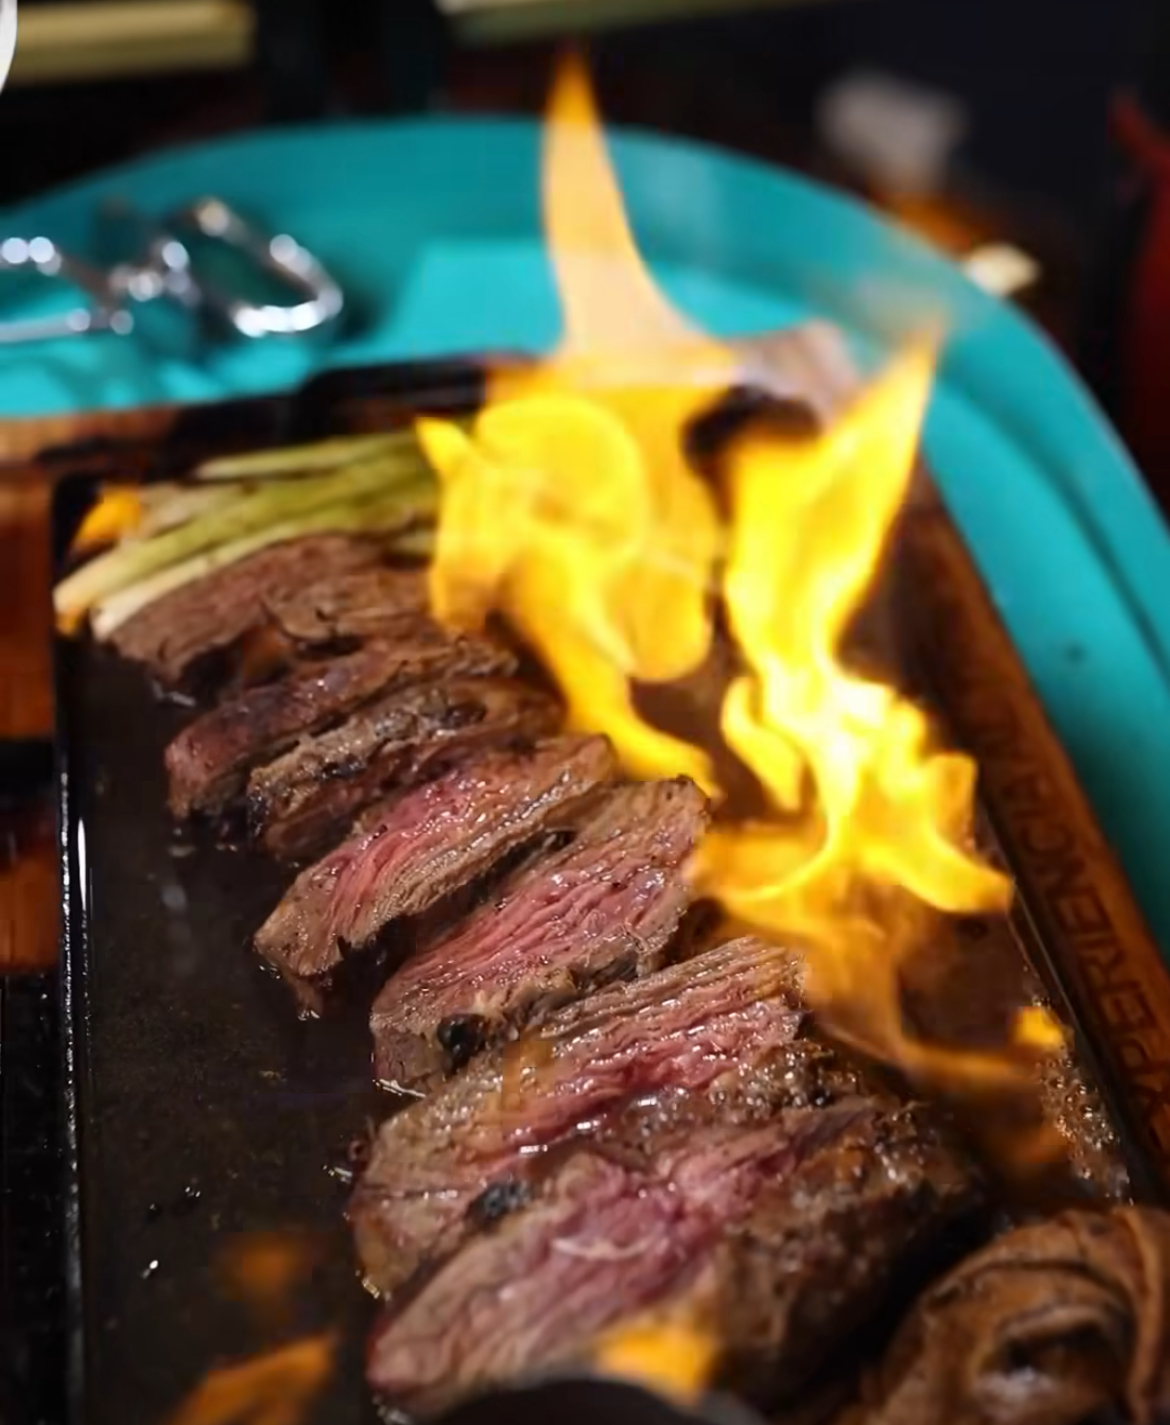 Rincón del Steak expande su experiencia con la apertura de su segunda sucursal